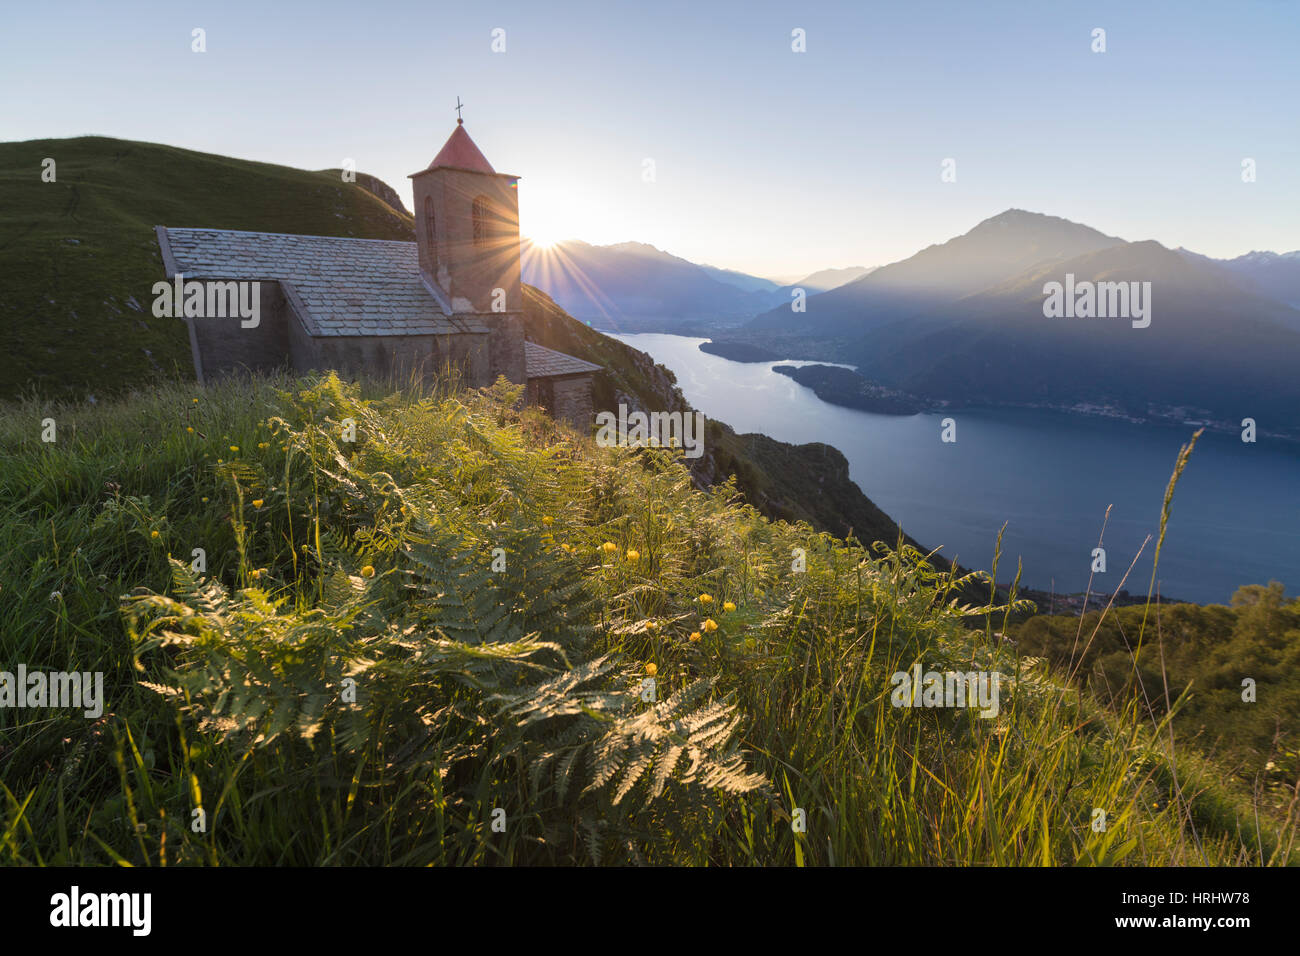 Sunbeam sur l'église de San Bernardo allume le paysage autour de l'eau bleu du lac de Côme à l'aube, Musso, Lombardie, Italie Banque D'Images